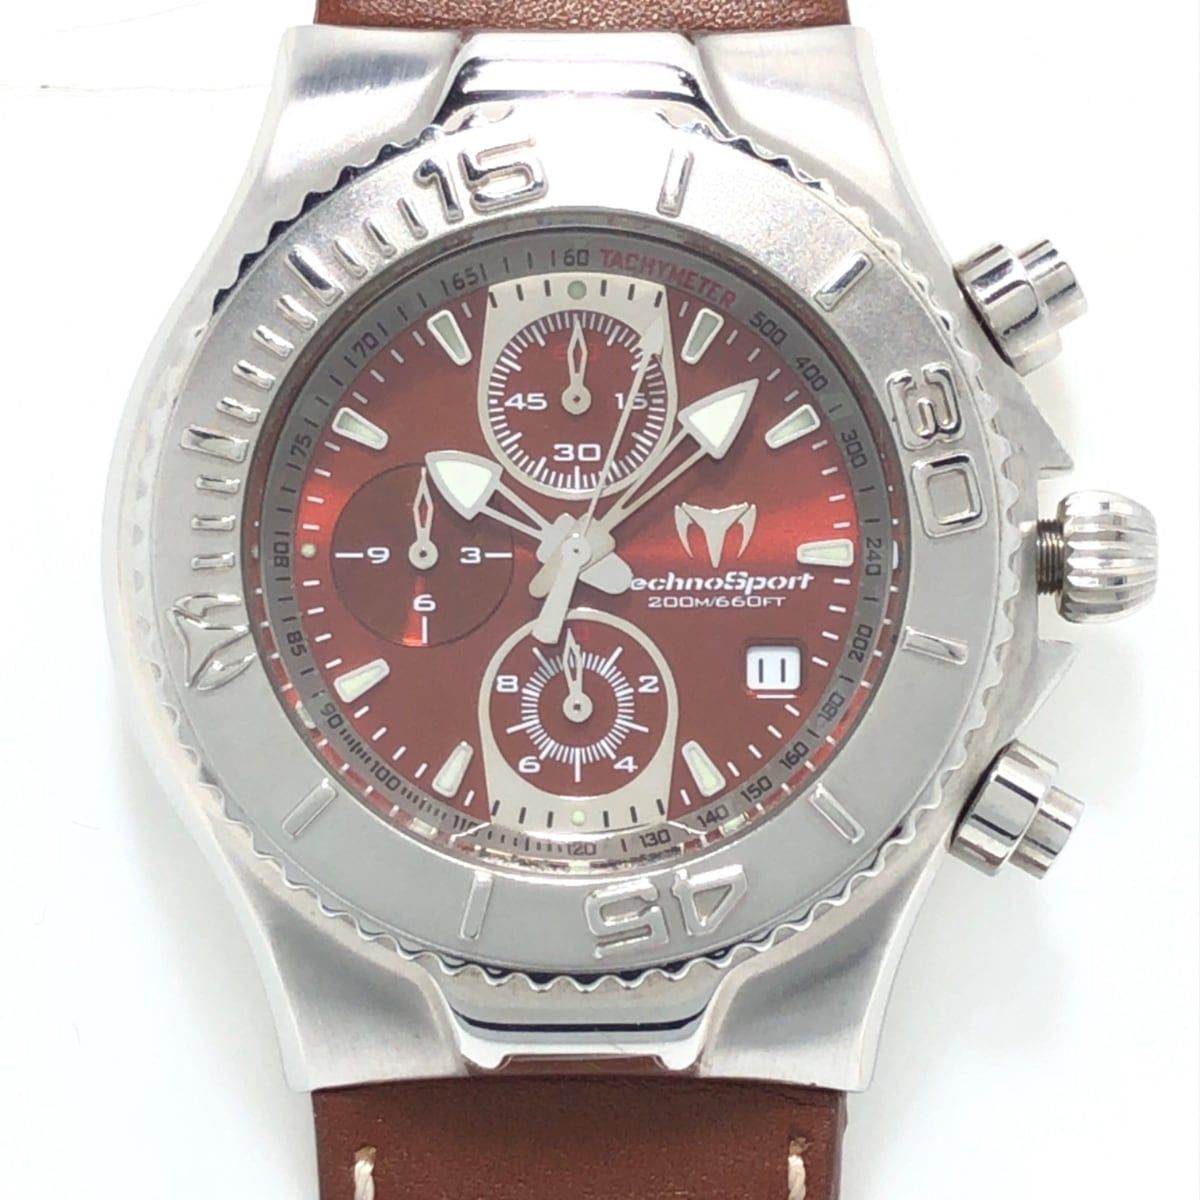 TECHNO MARINE(テクノマリーン) 腕時計 TMY26 革ベルト/クロノグラフ 